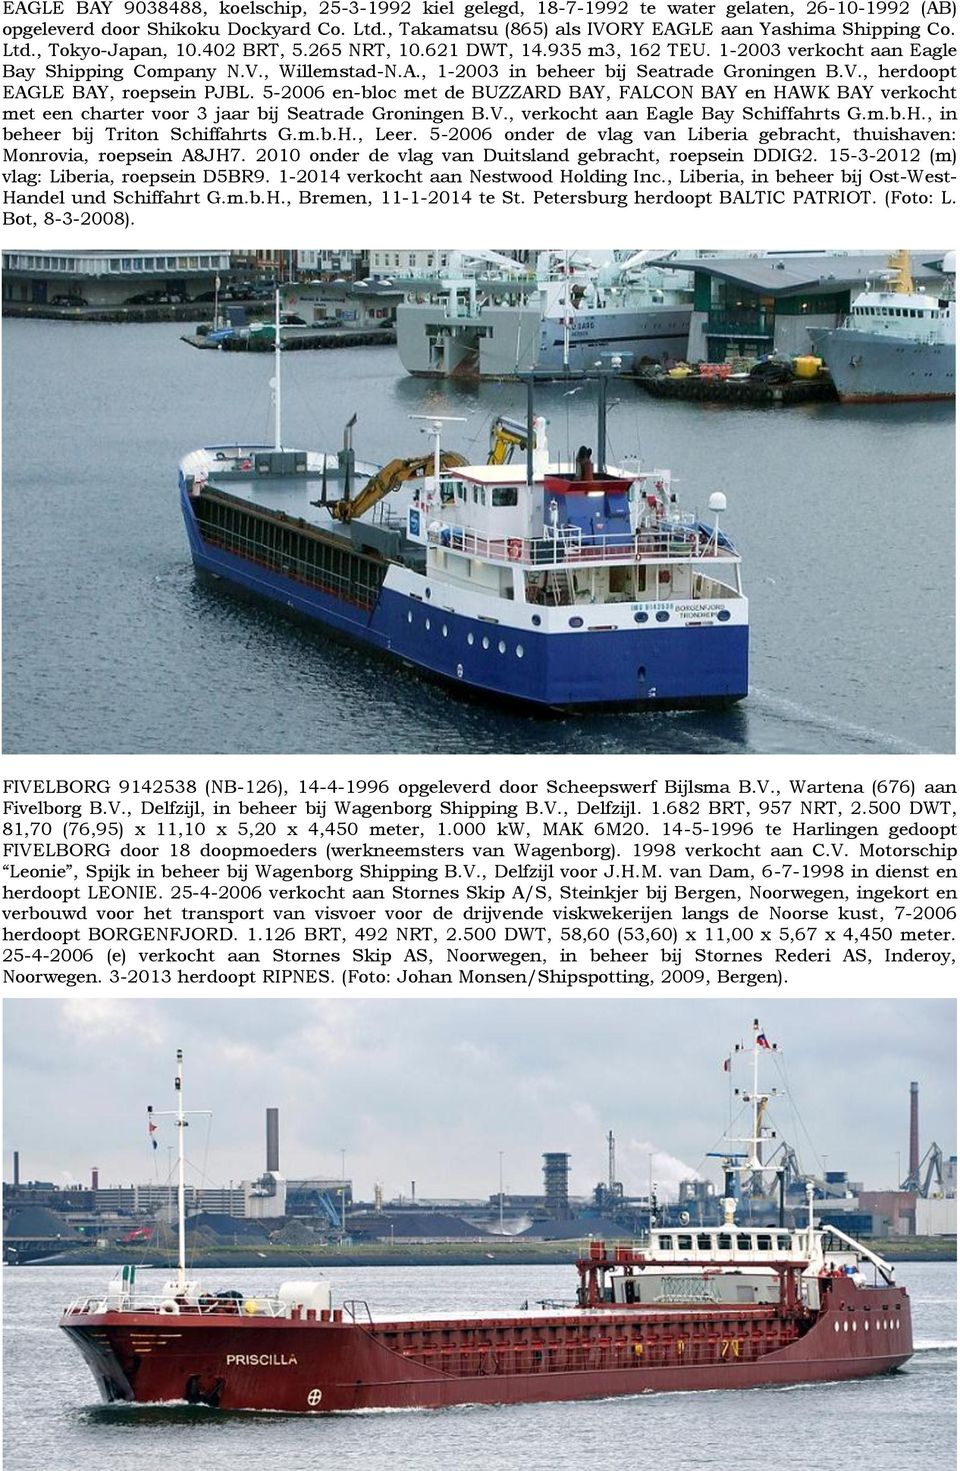 5-2006 en-bloc met de BUZZARD BAY, FALCON BAY en HAWK BAY verkocht met een charter voor 3 jaar bij Seatrade Groningen B.V., verkocht aan Eagle Bay Schiffahrts G.m.b.H., in beheer bij Triton Schiffahrts G.